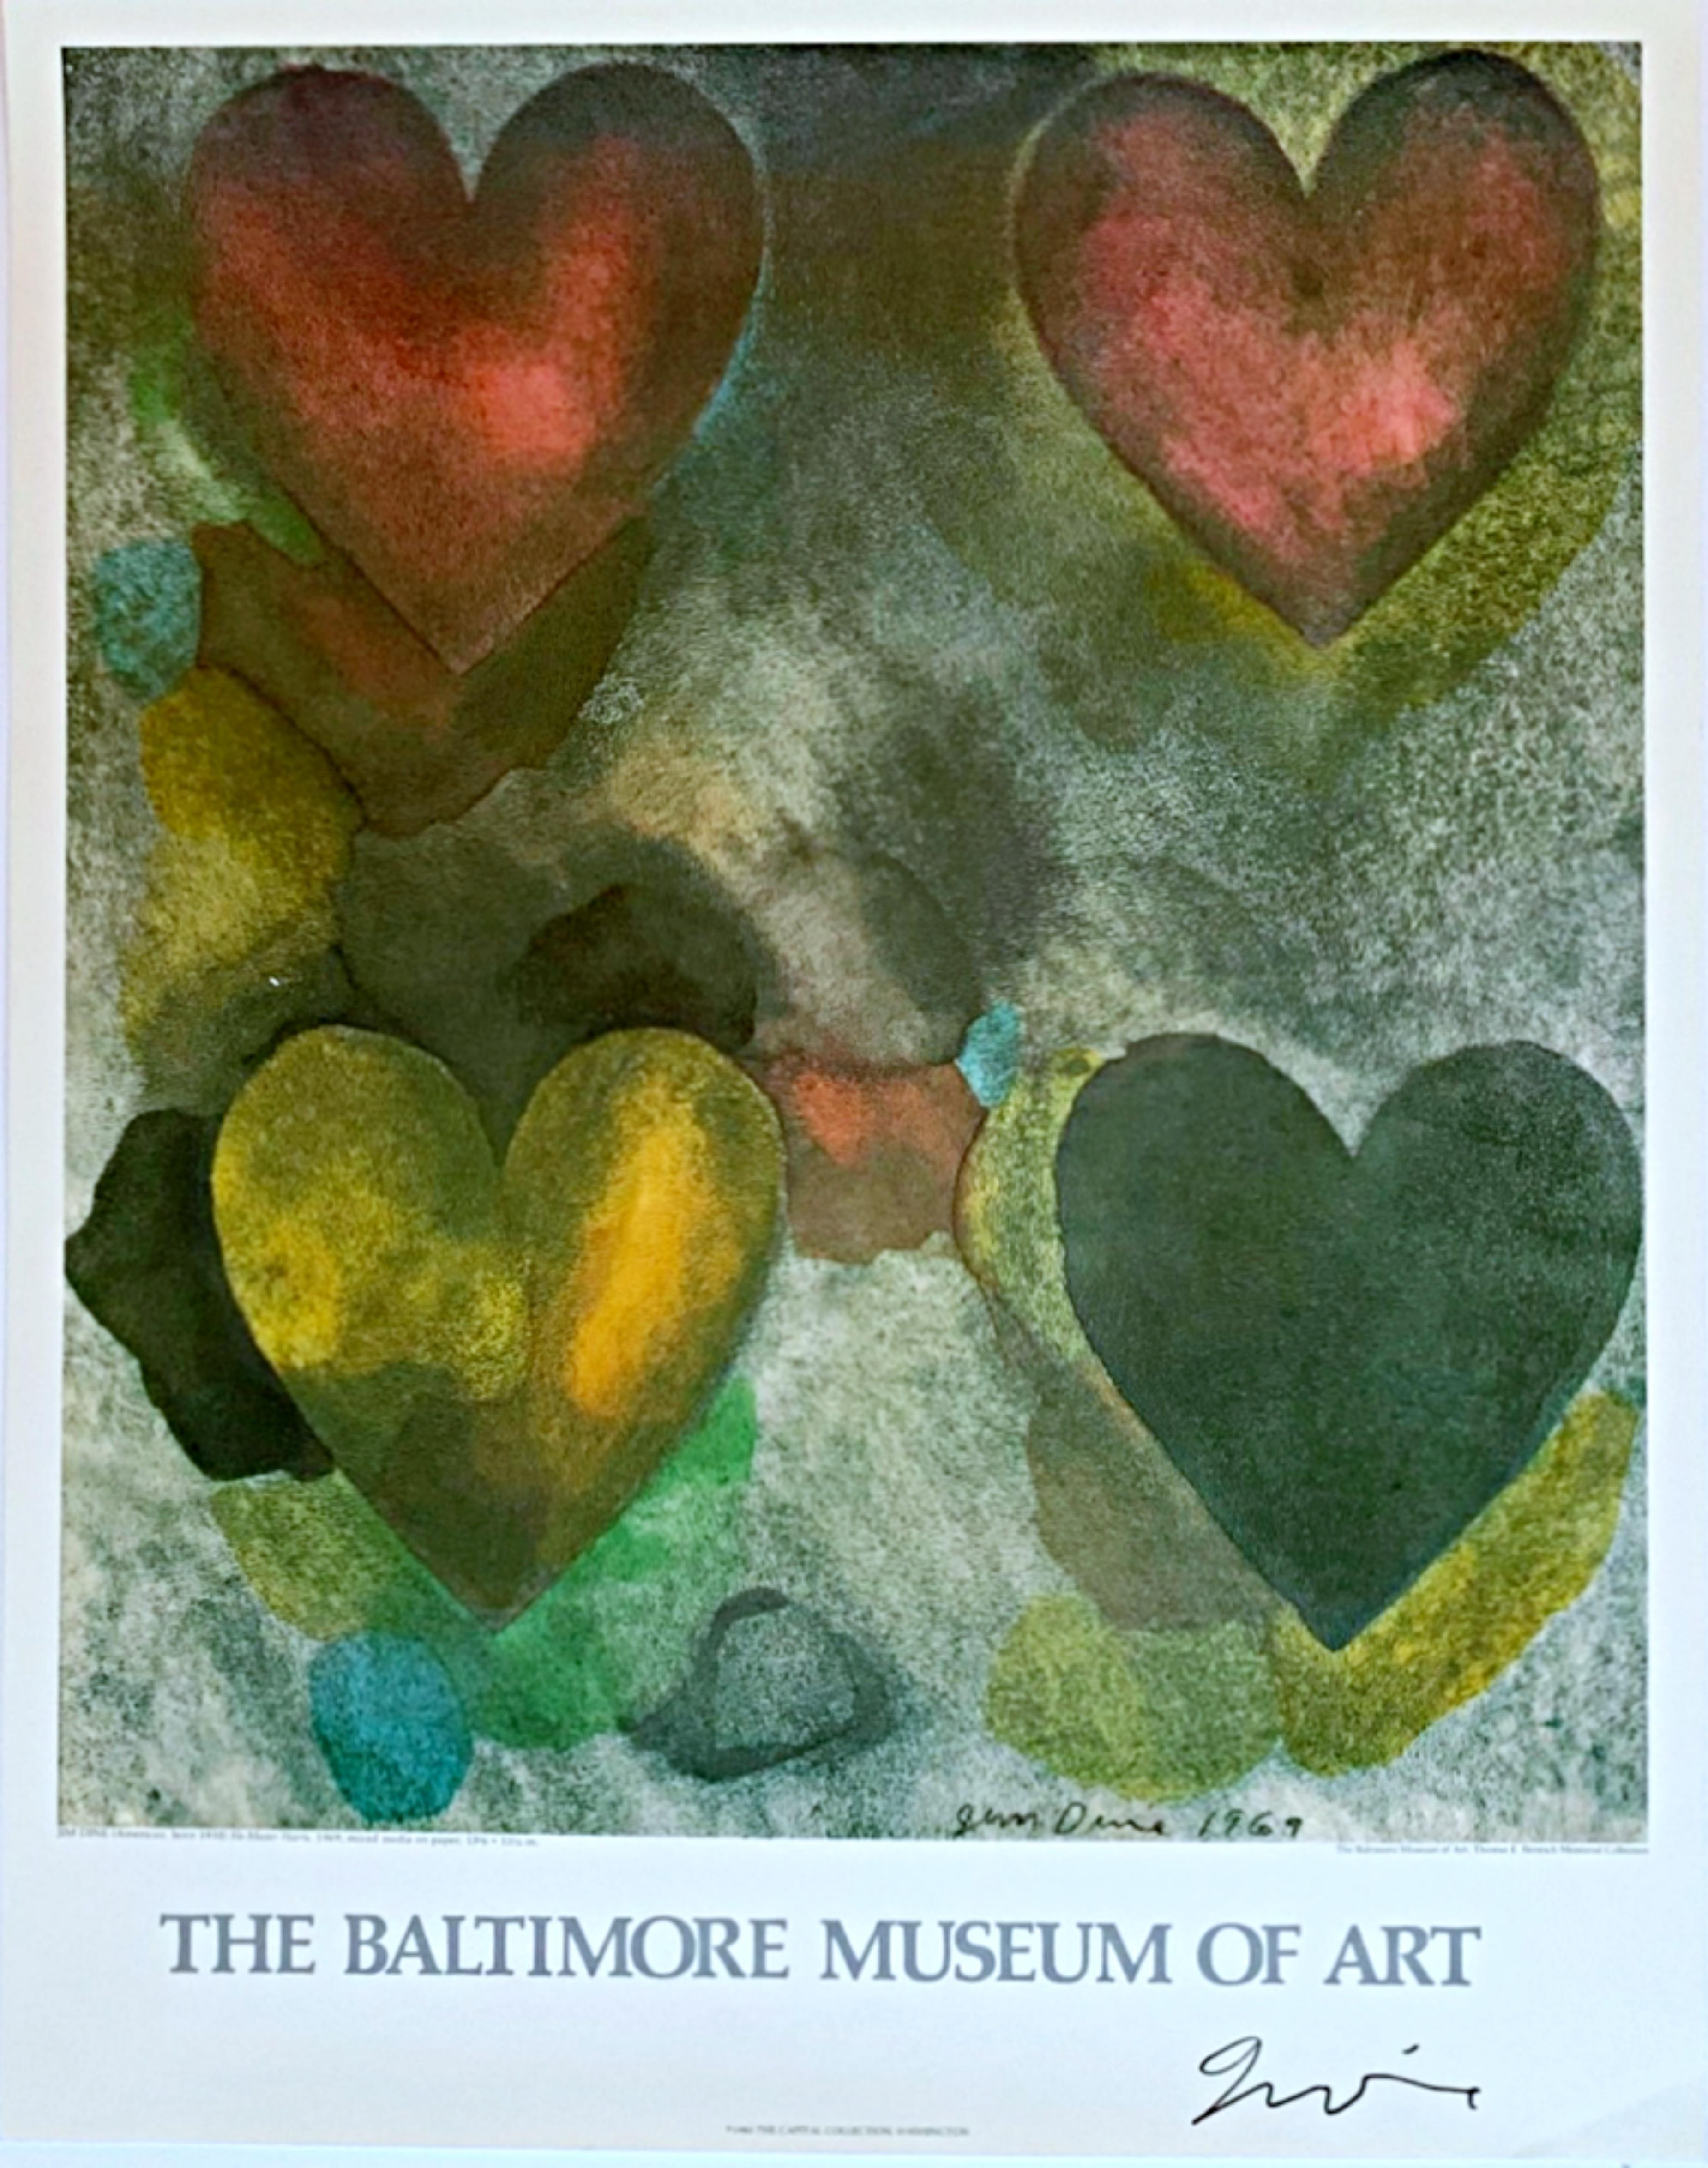 Four Hearts, rare affiche du Baltimore Museum of Art  (signé à la main par Jim Dine)